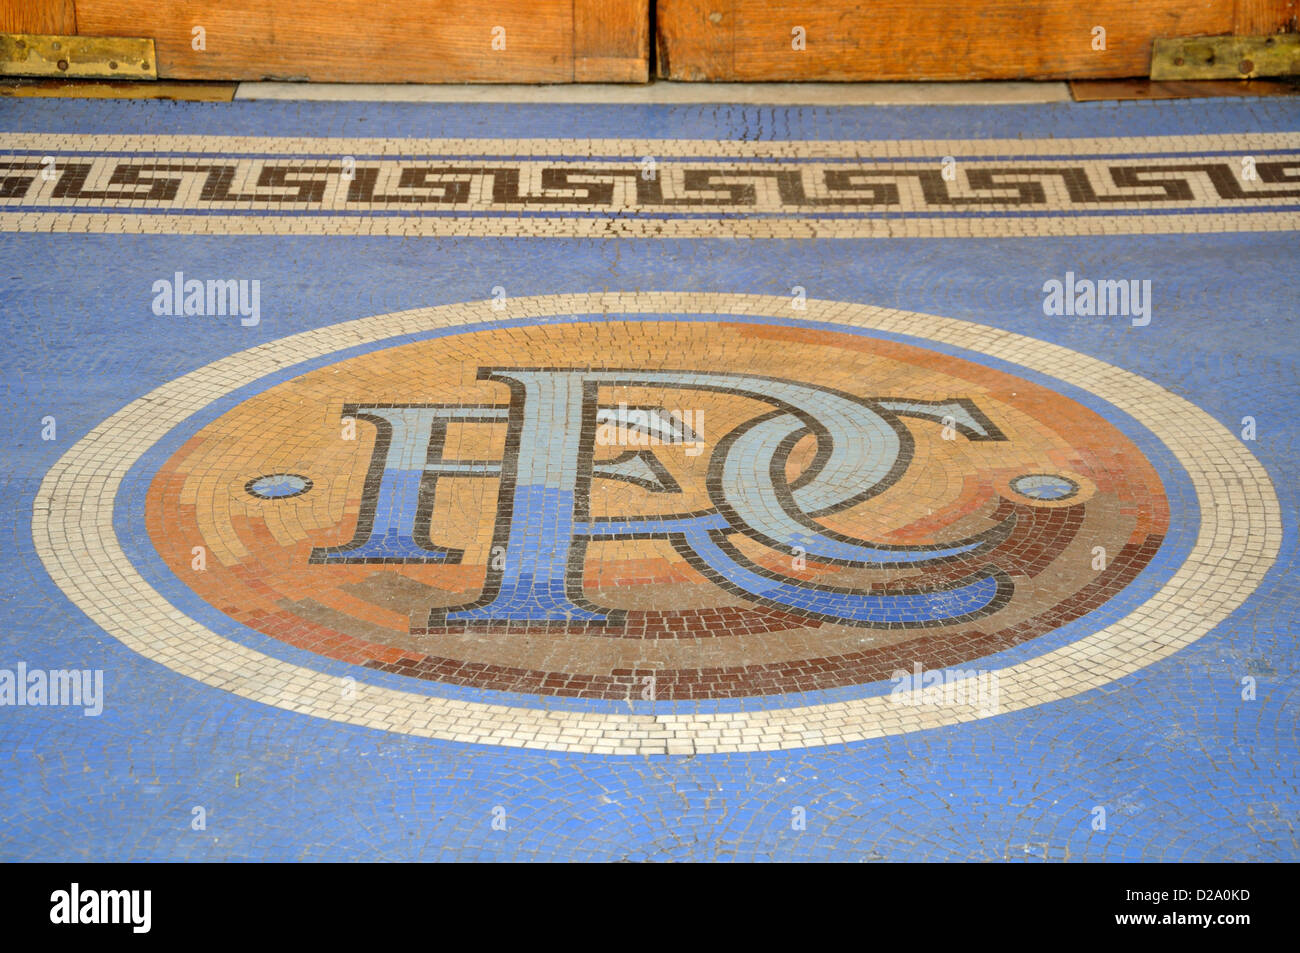 Tessere mosaico formano la richiesta RFC lettere del Rangers Football Club a Ibrox stadium di Glasgow, Scozia Foto Stock